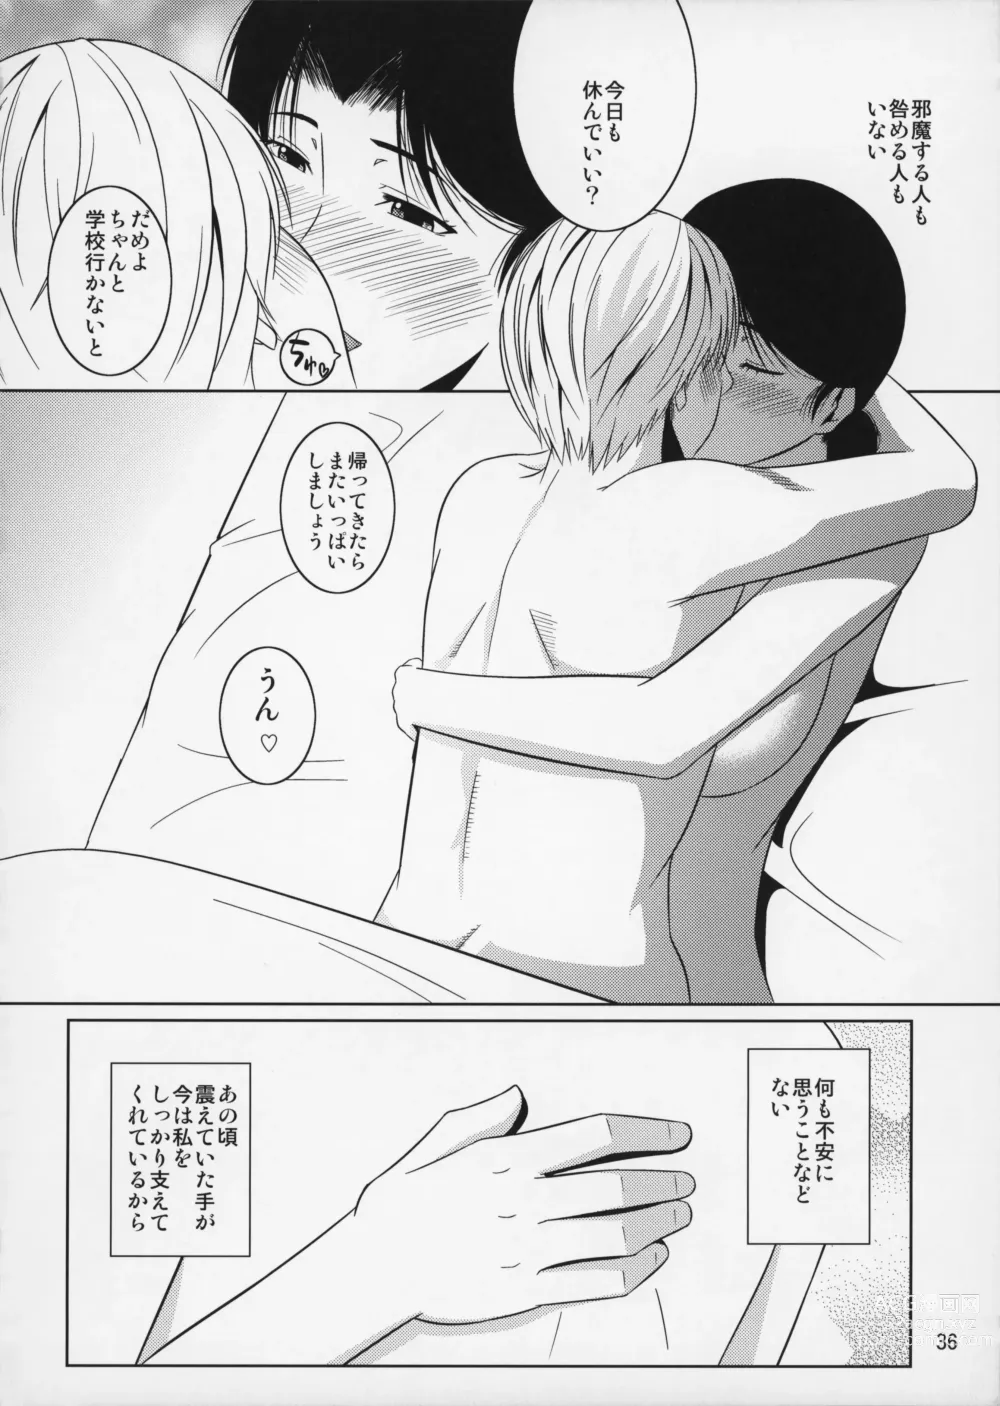 Page 37 of doujinshi Boketsu o Horu 10